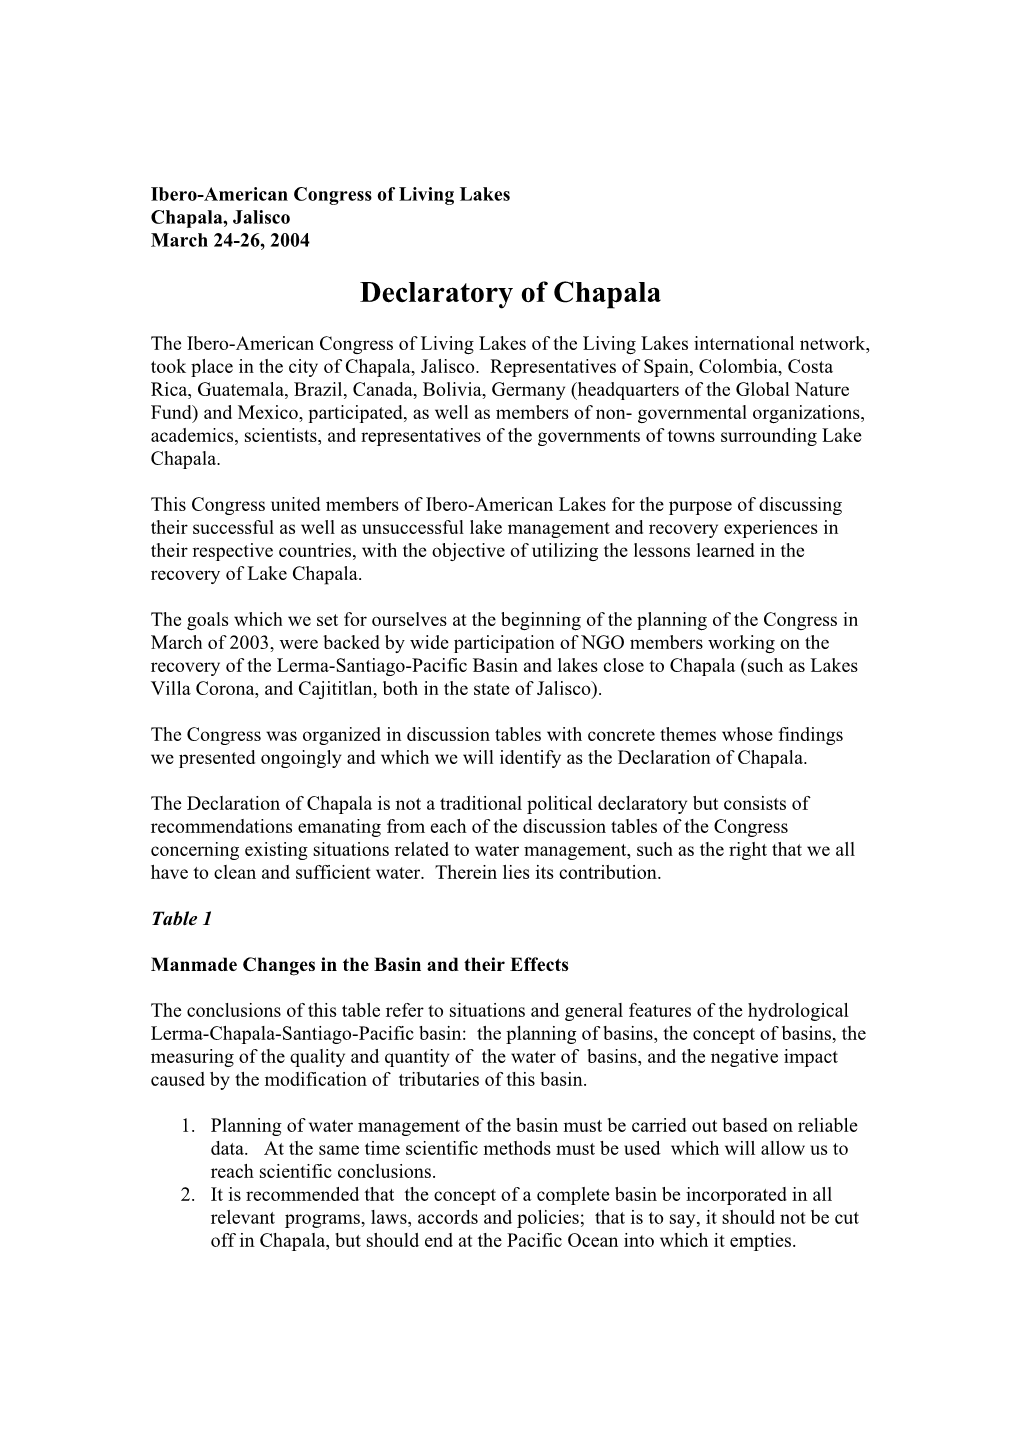 Declaratory of Chapala